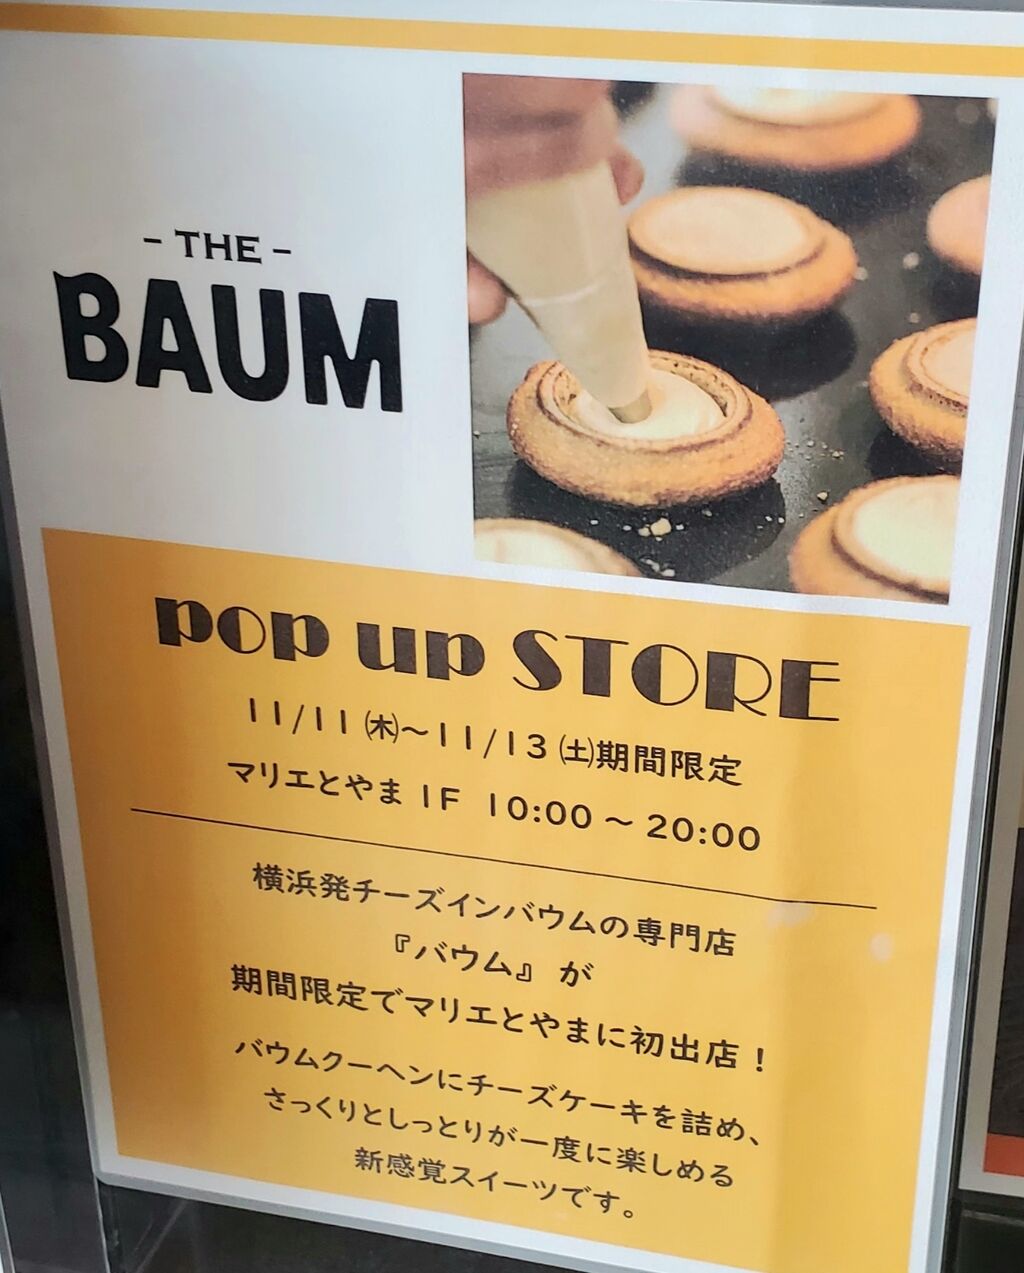 マリエ初出店！『マリエとやま』内に横浜発チーズインバウムの専門店『THE BAUM』のポップアップストアがオープンするらしい。『ささら屋 お